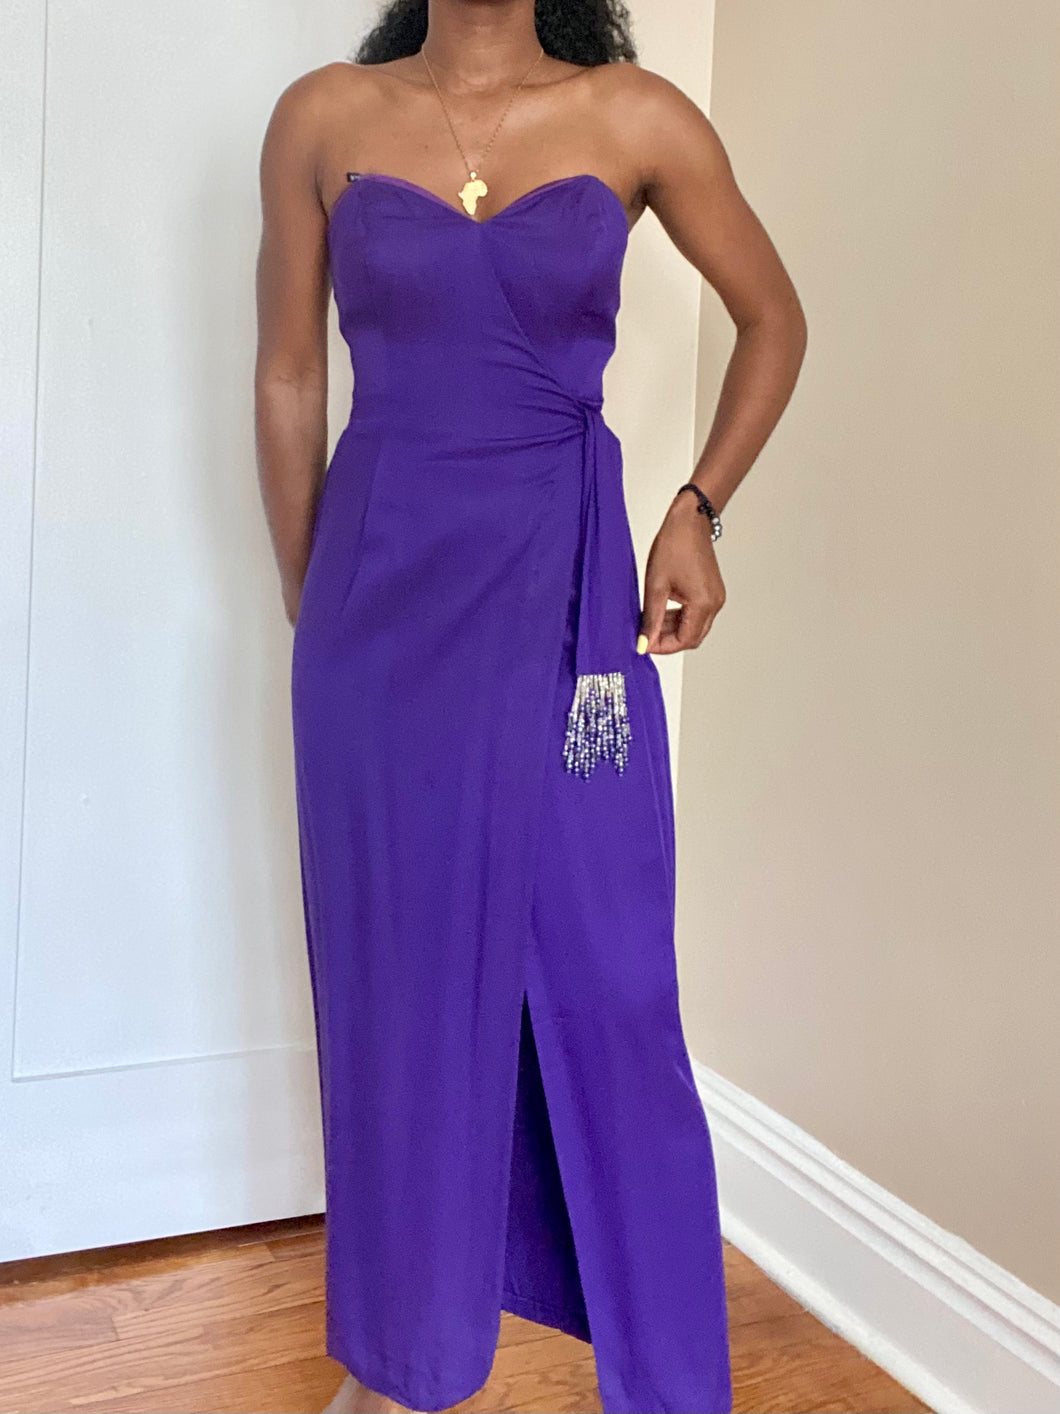 Vintage Purple/Blue Strapless Cocktail Dress(M)